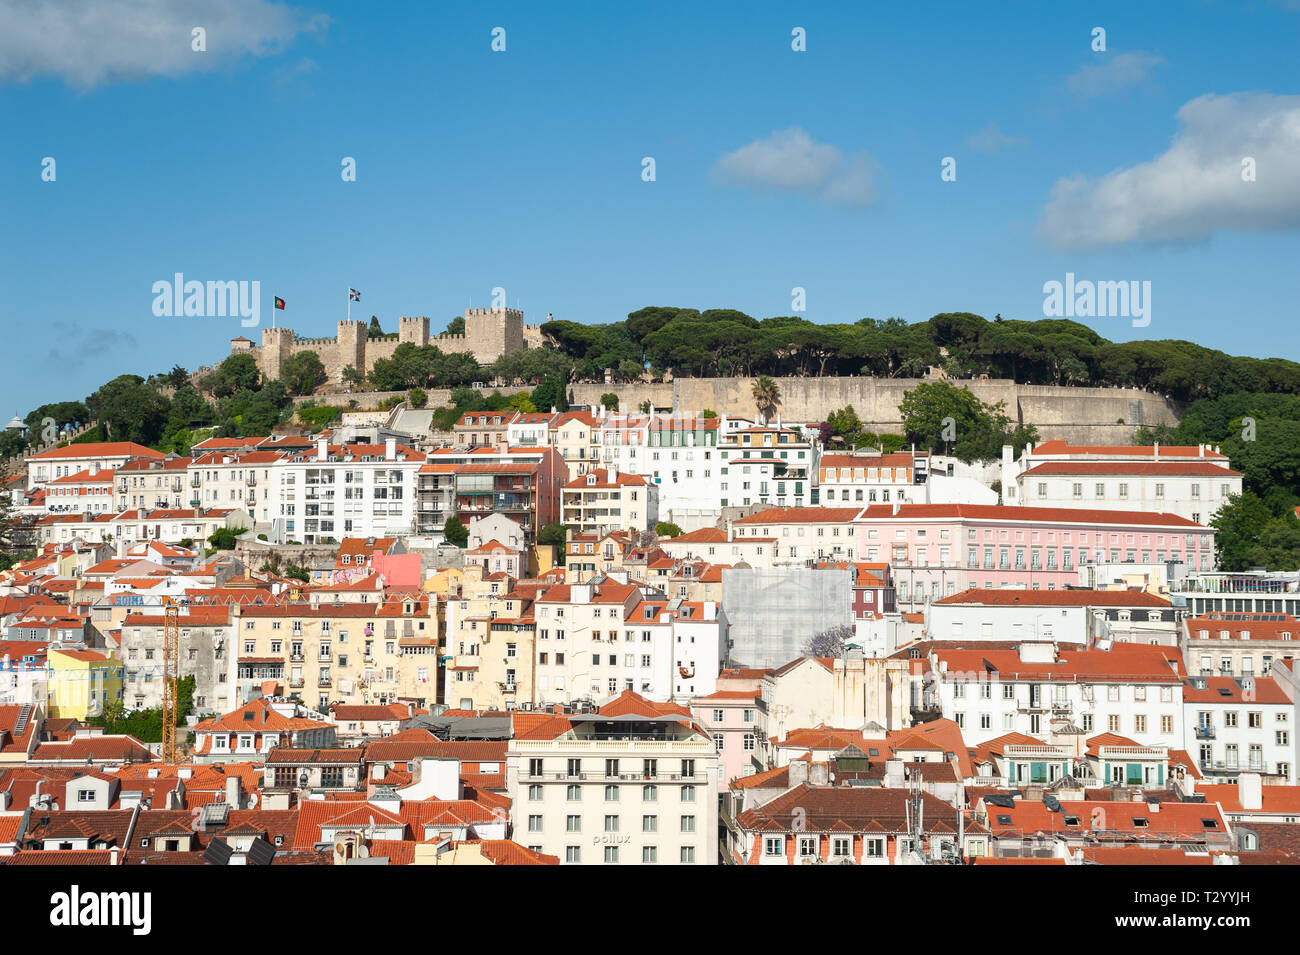 11.06.2018, Lisbonne, Portugal, Europe - une vue sur la ville historique de Baixa district avec le Castelo de Sao Jorge dans la toile. Banque D'Images